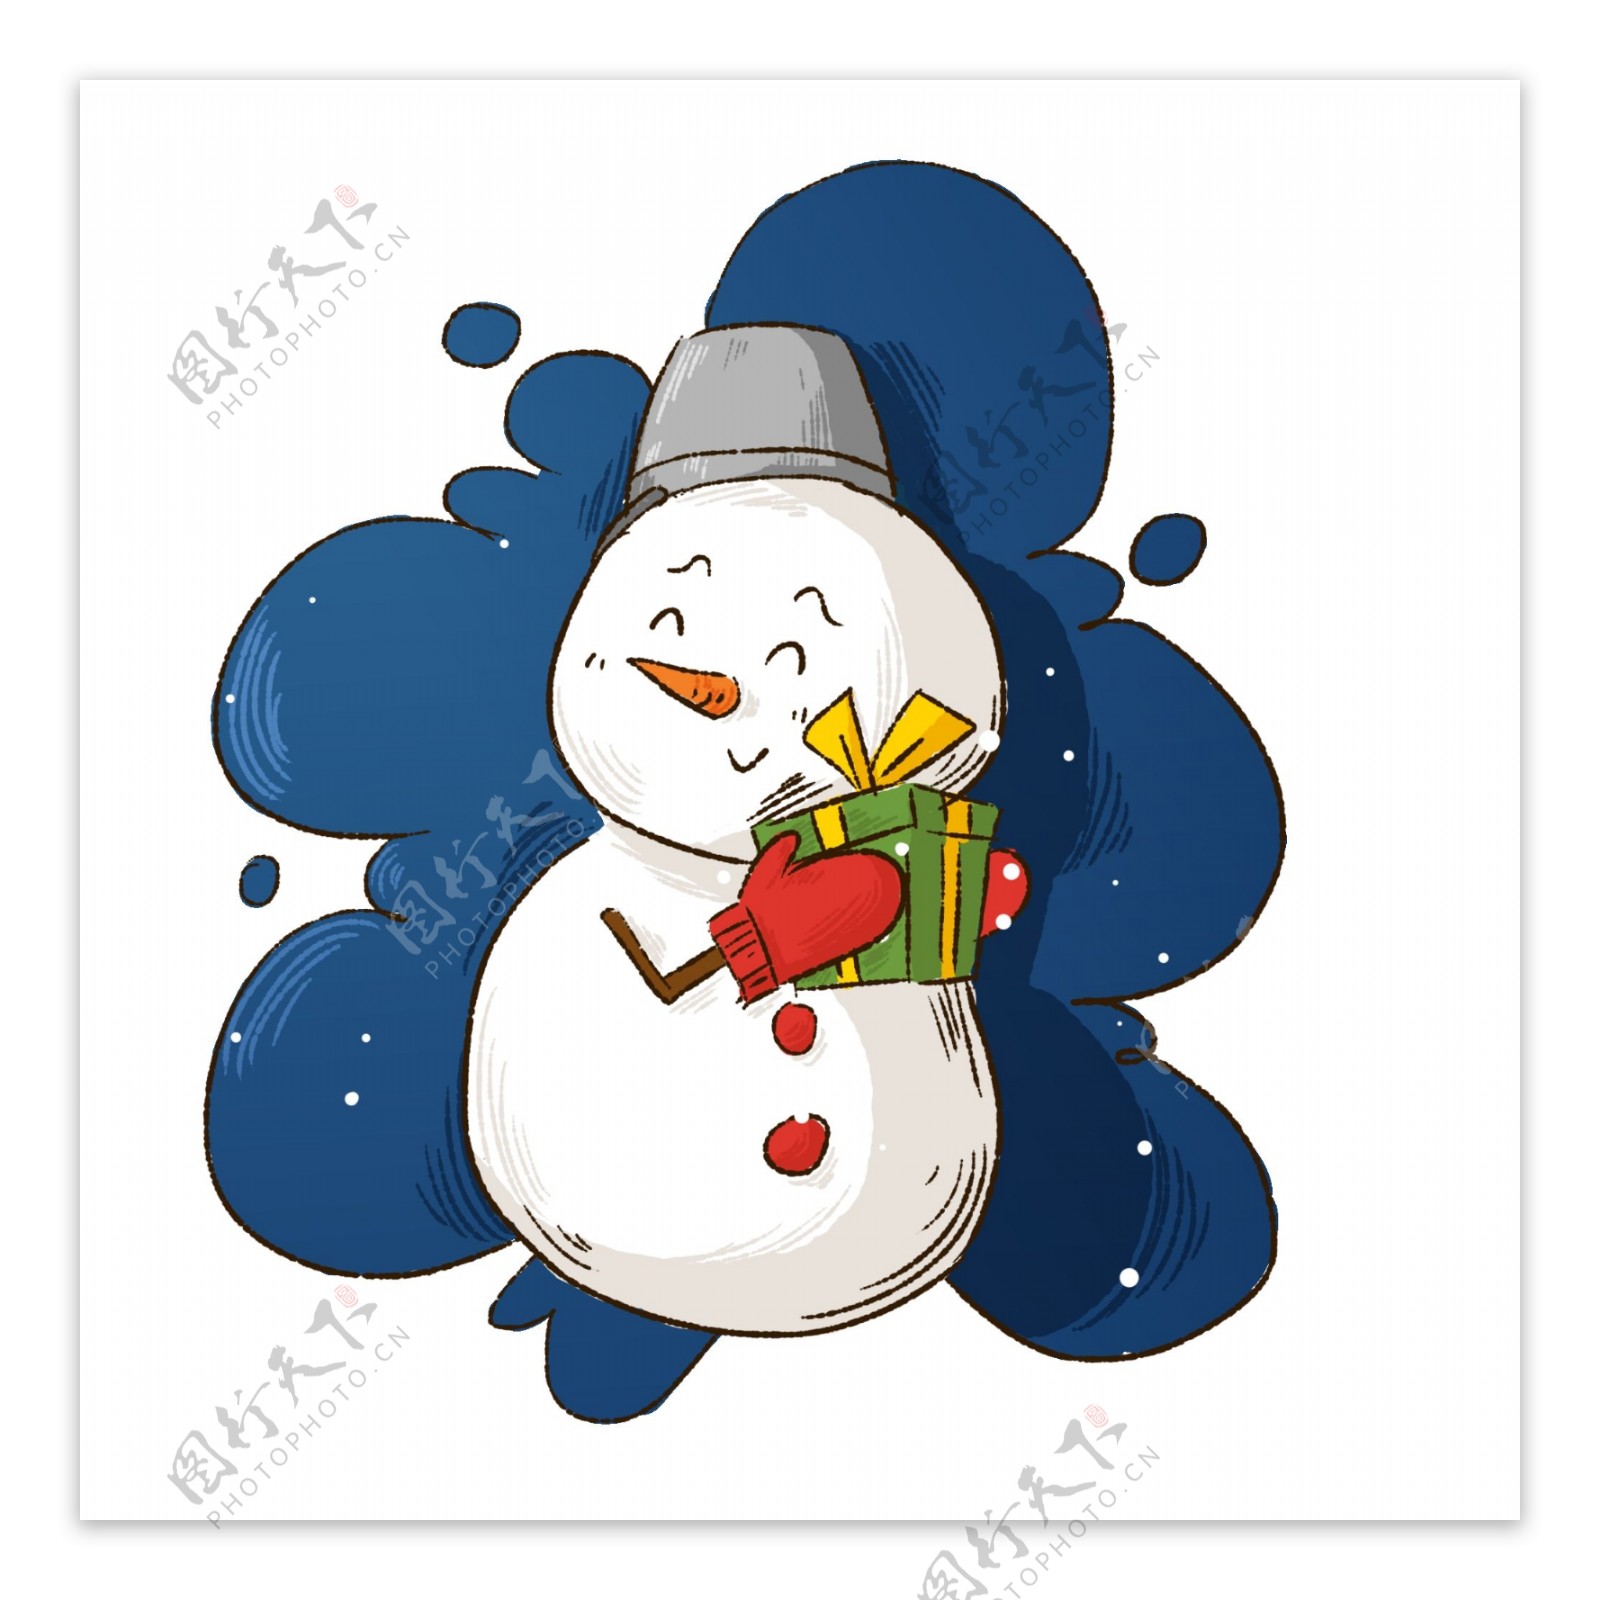 冬季冬天可爱雪人卡通形象